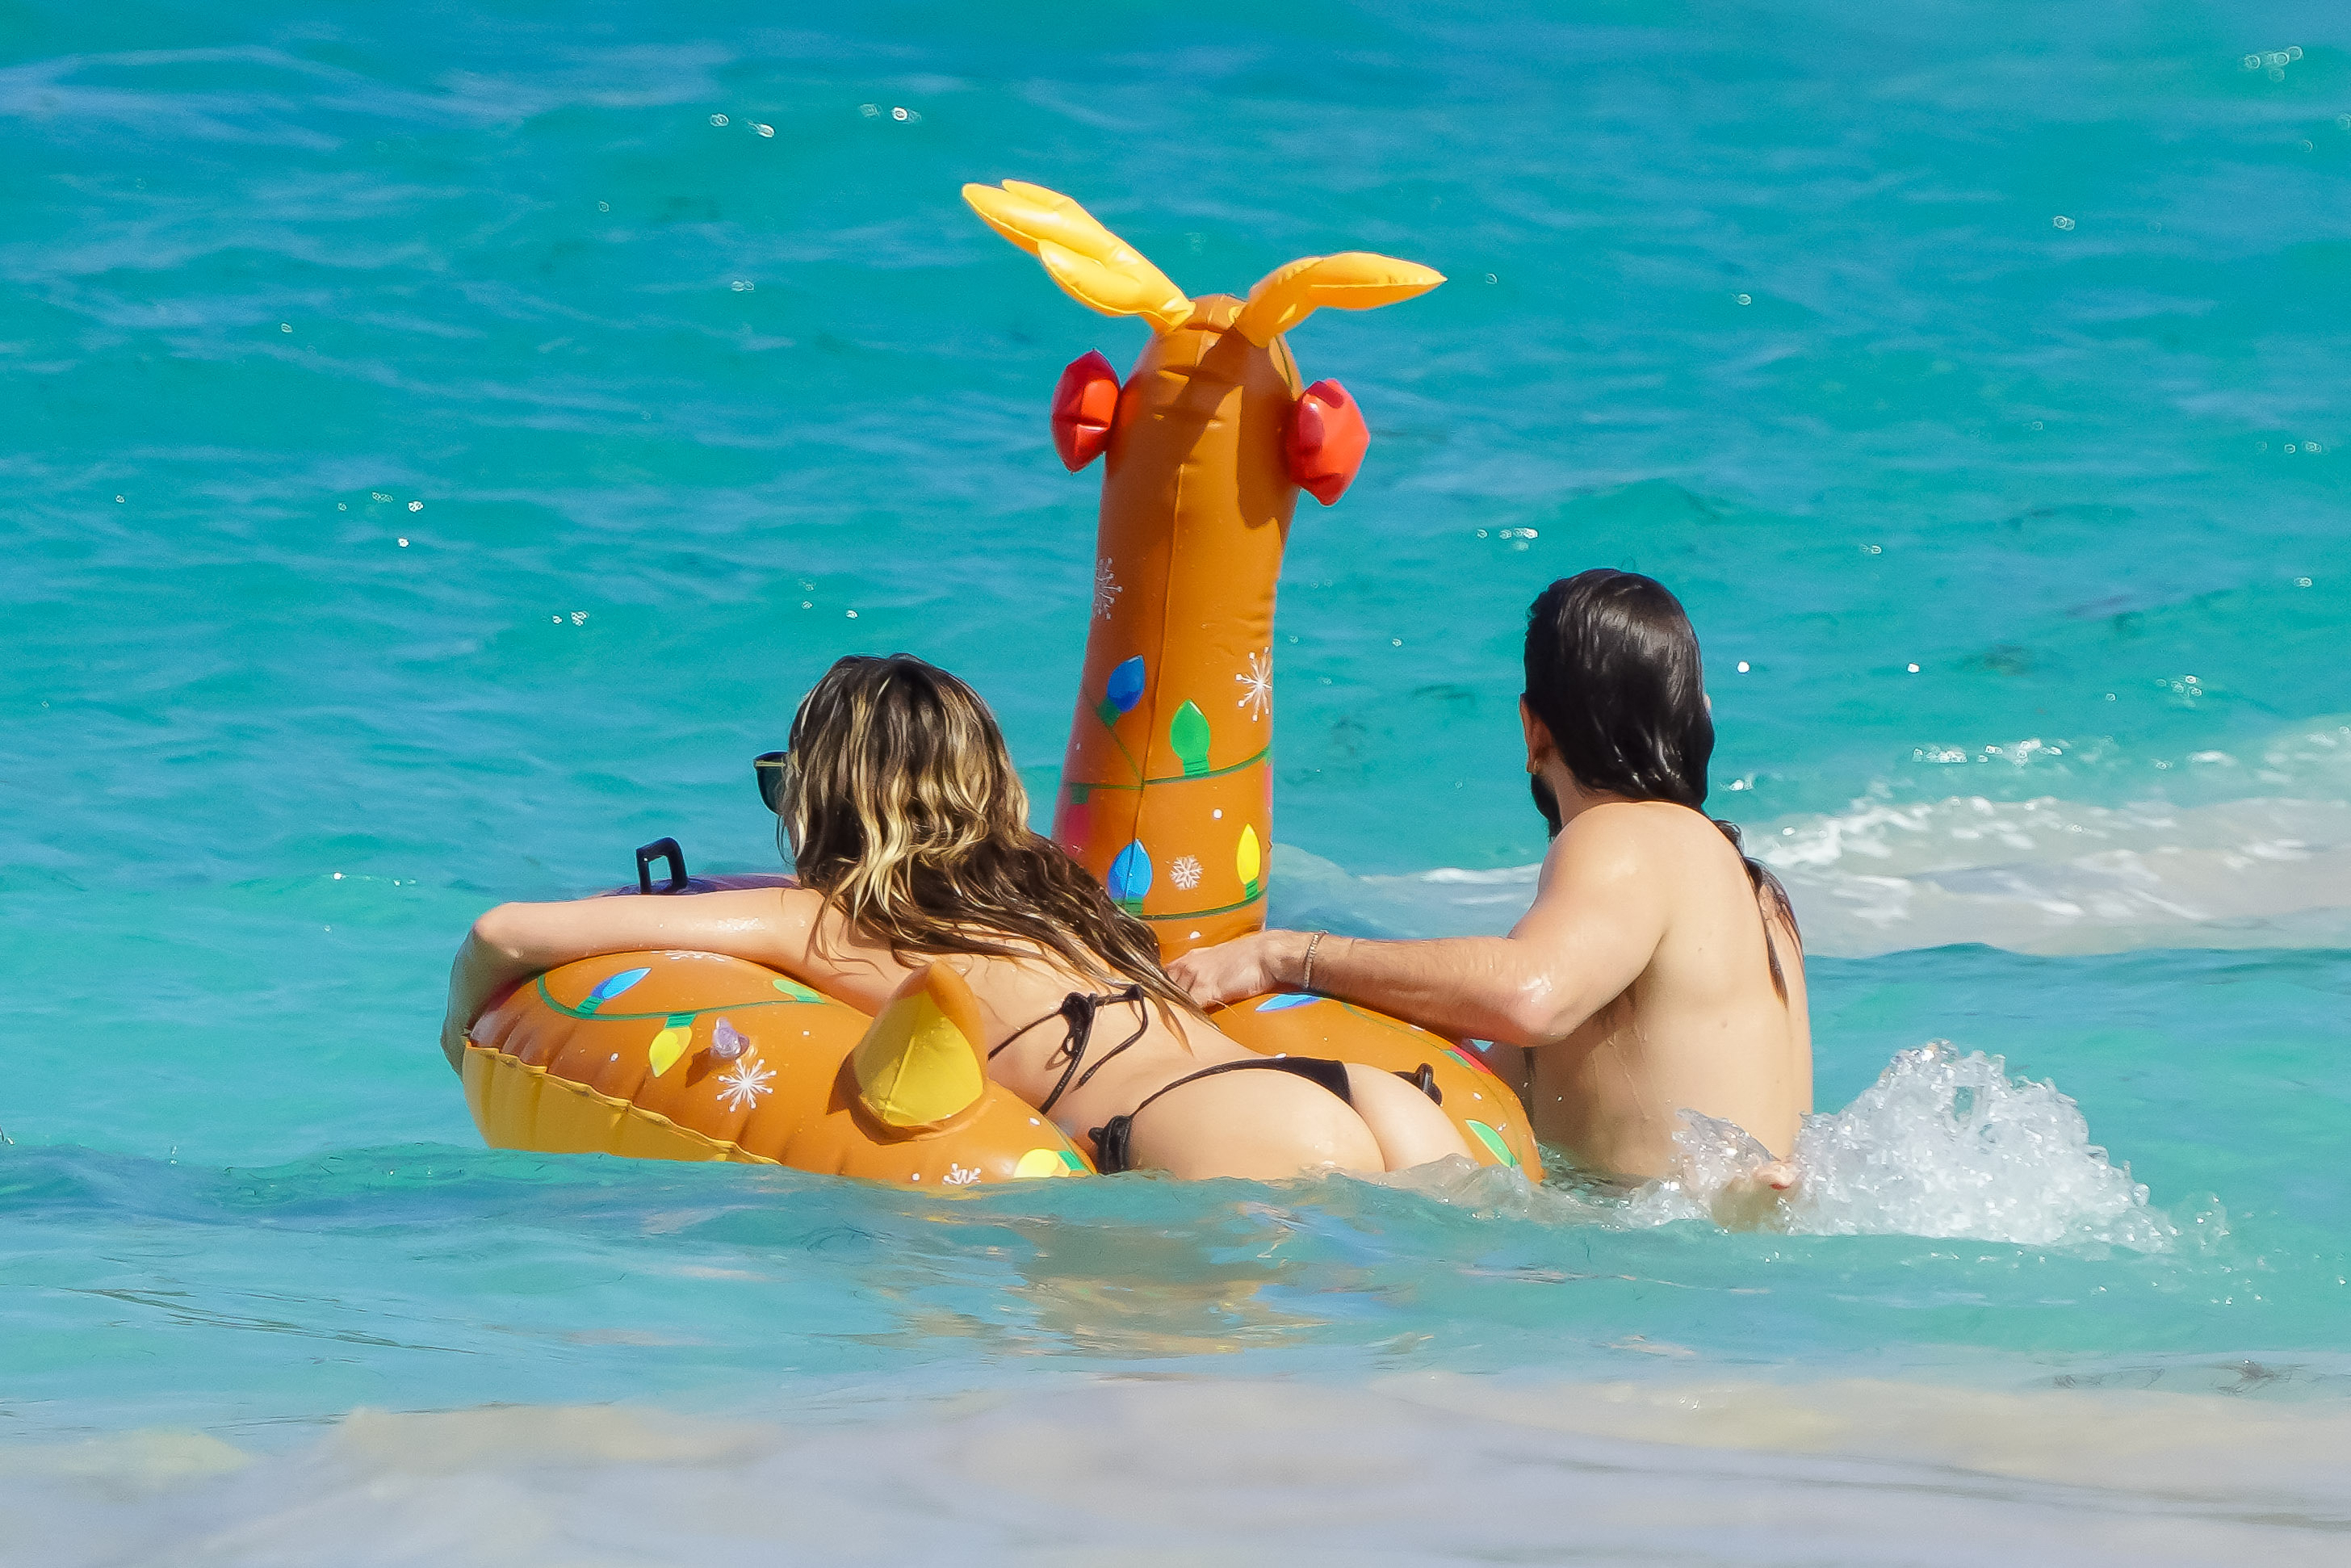 Heidi enjoyed the Caribbean waves with her husband Tom Kaulitz